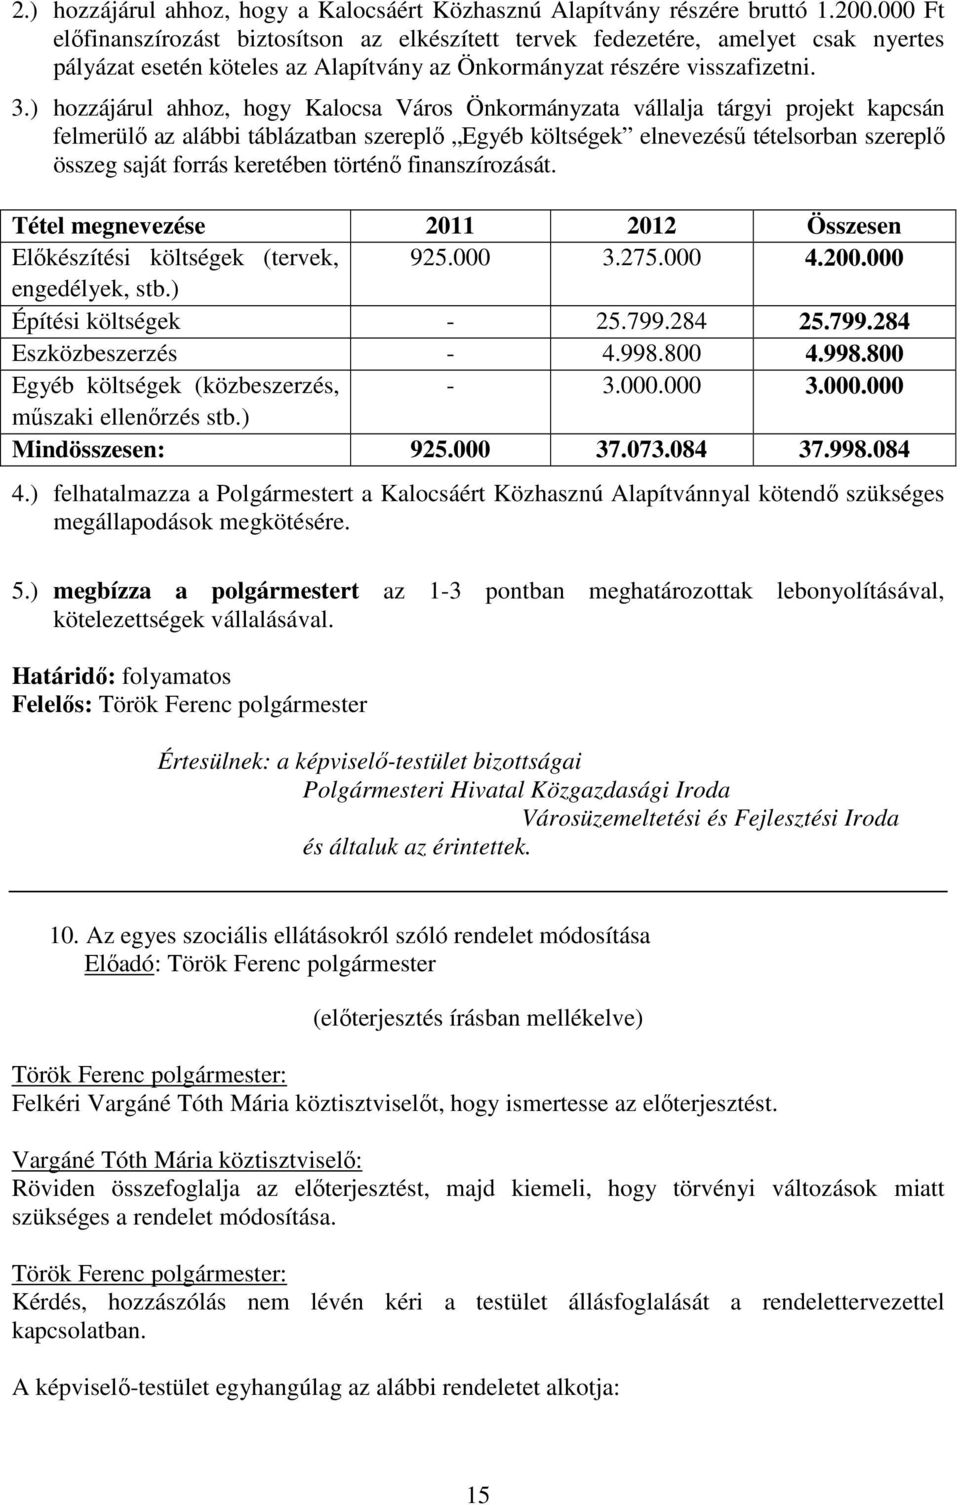 ) hozzájárul ahhoz, hogy Kalocsa Város Önkormányzata vállalja tárgyi projekt kapcsán felmerülő az alábbi táblázatban szereplő Egyéb költségek elnevezésű tételsorban szereplő összeg saját forrás